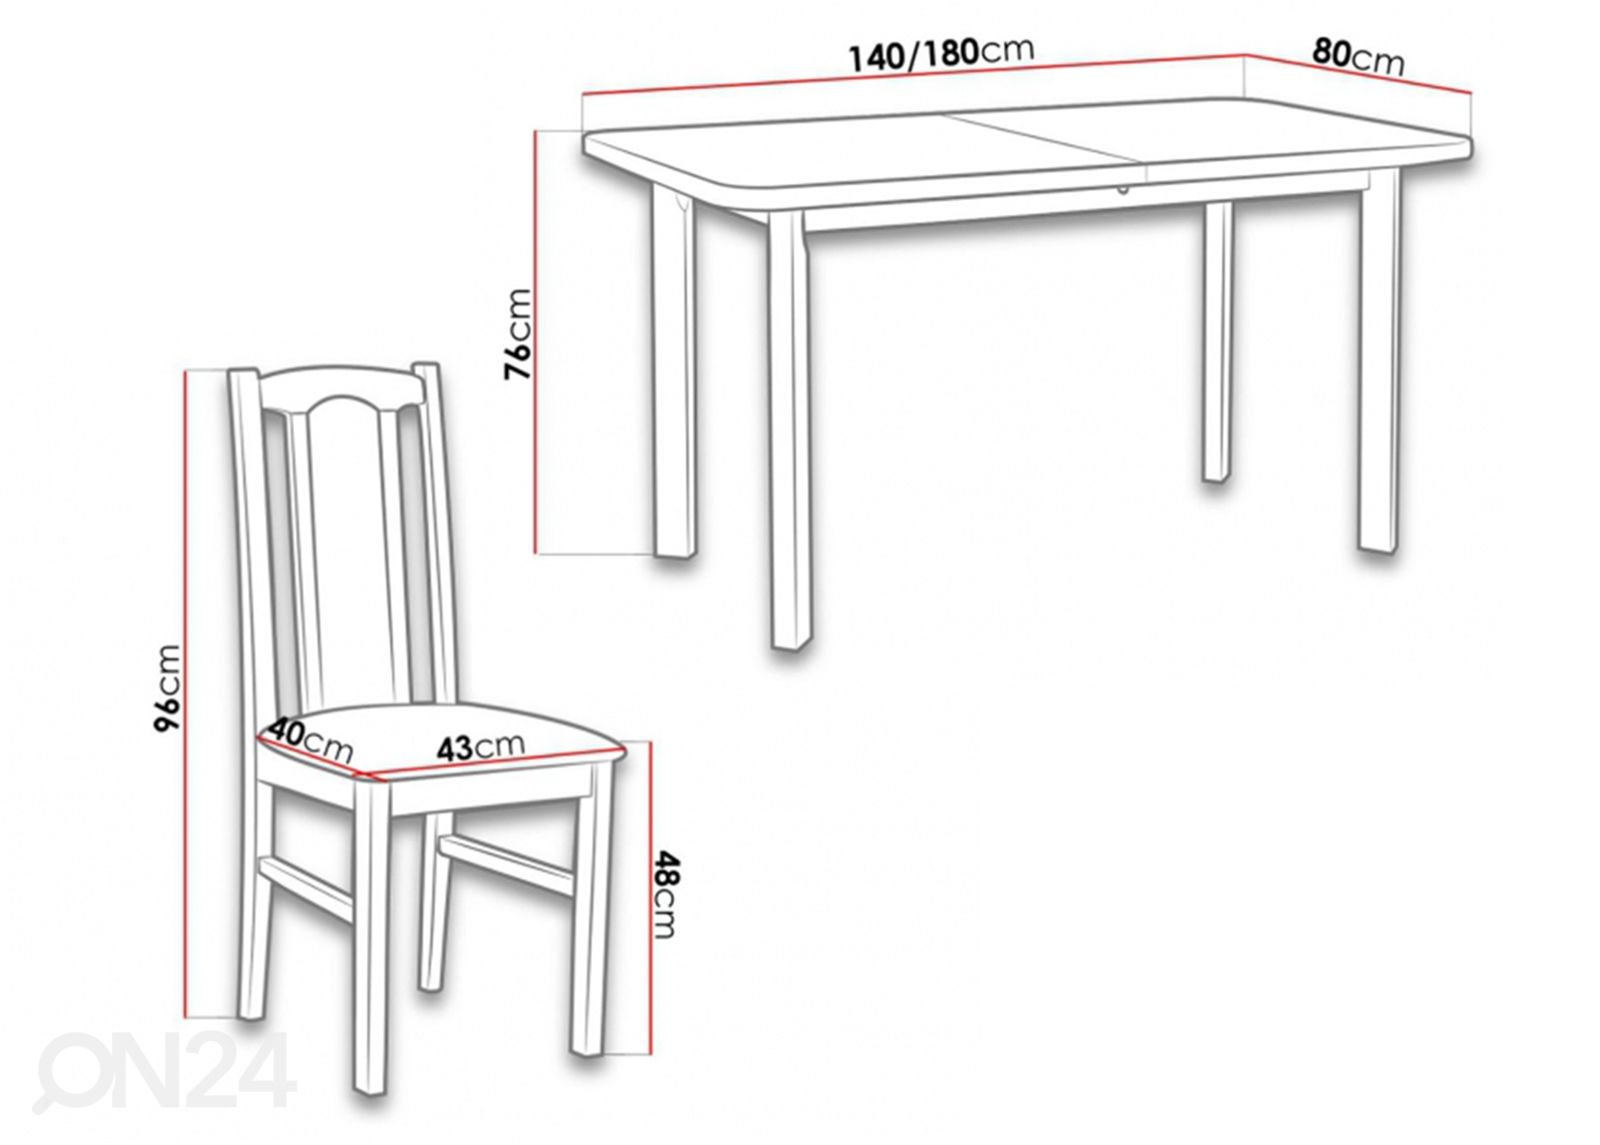 Удлиняющийся обеденный стол 80x140-180 cm+ 6 стульев увеличить размеры